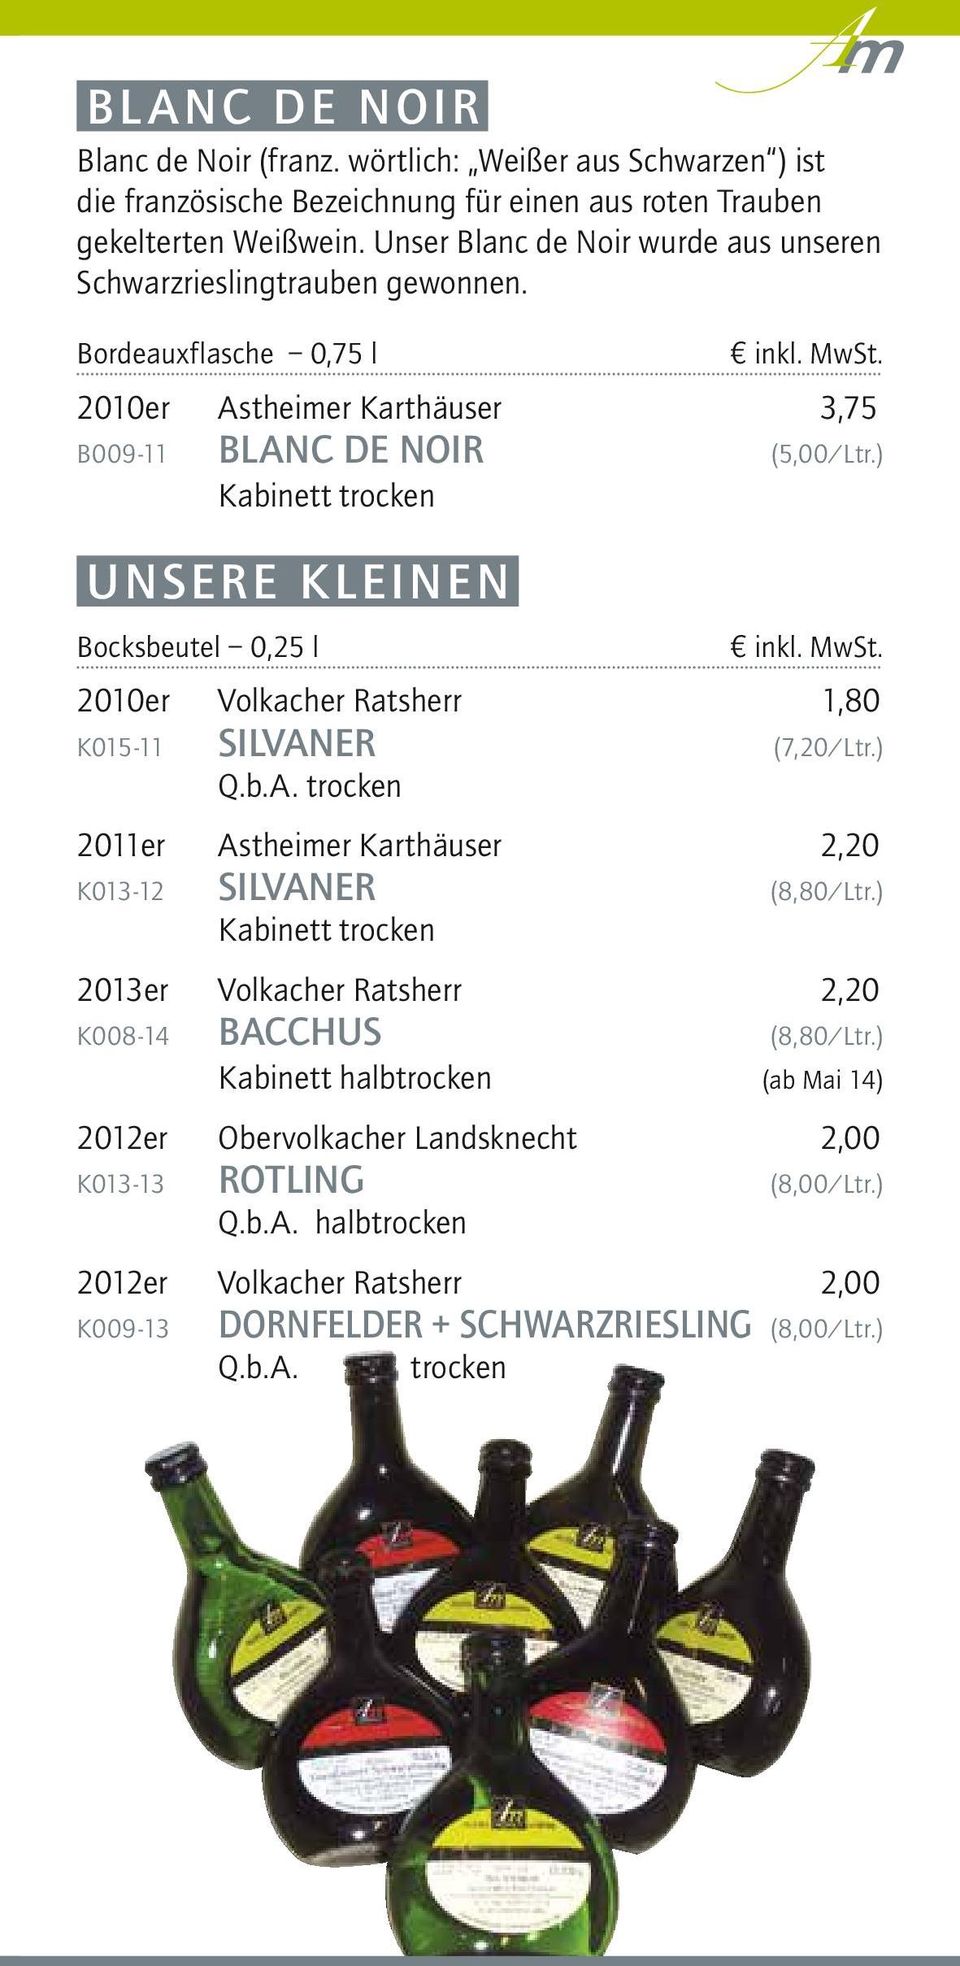 ) UNSERE KLEINEN Bocksbeutel 0,25 l 2010er Volkacher Ratsherr 1,80 K015-11 SILVANER (7,20/Ltr.) 2011er Astheimer Karthäuser 2,20 K013-12 SILVANER (8,80/Ltr.